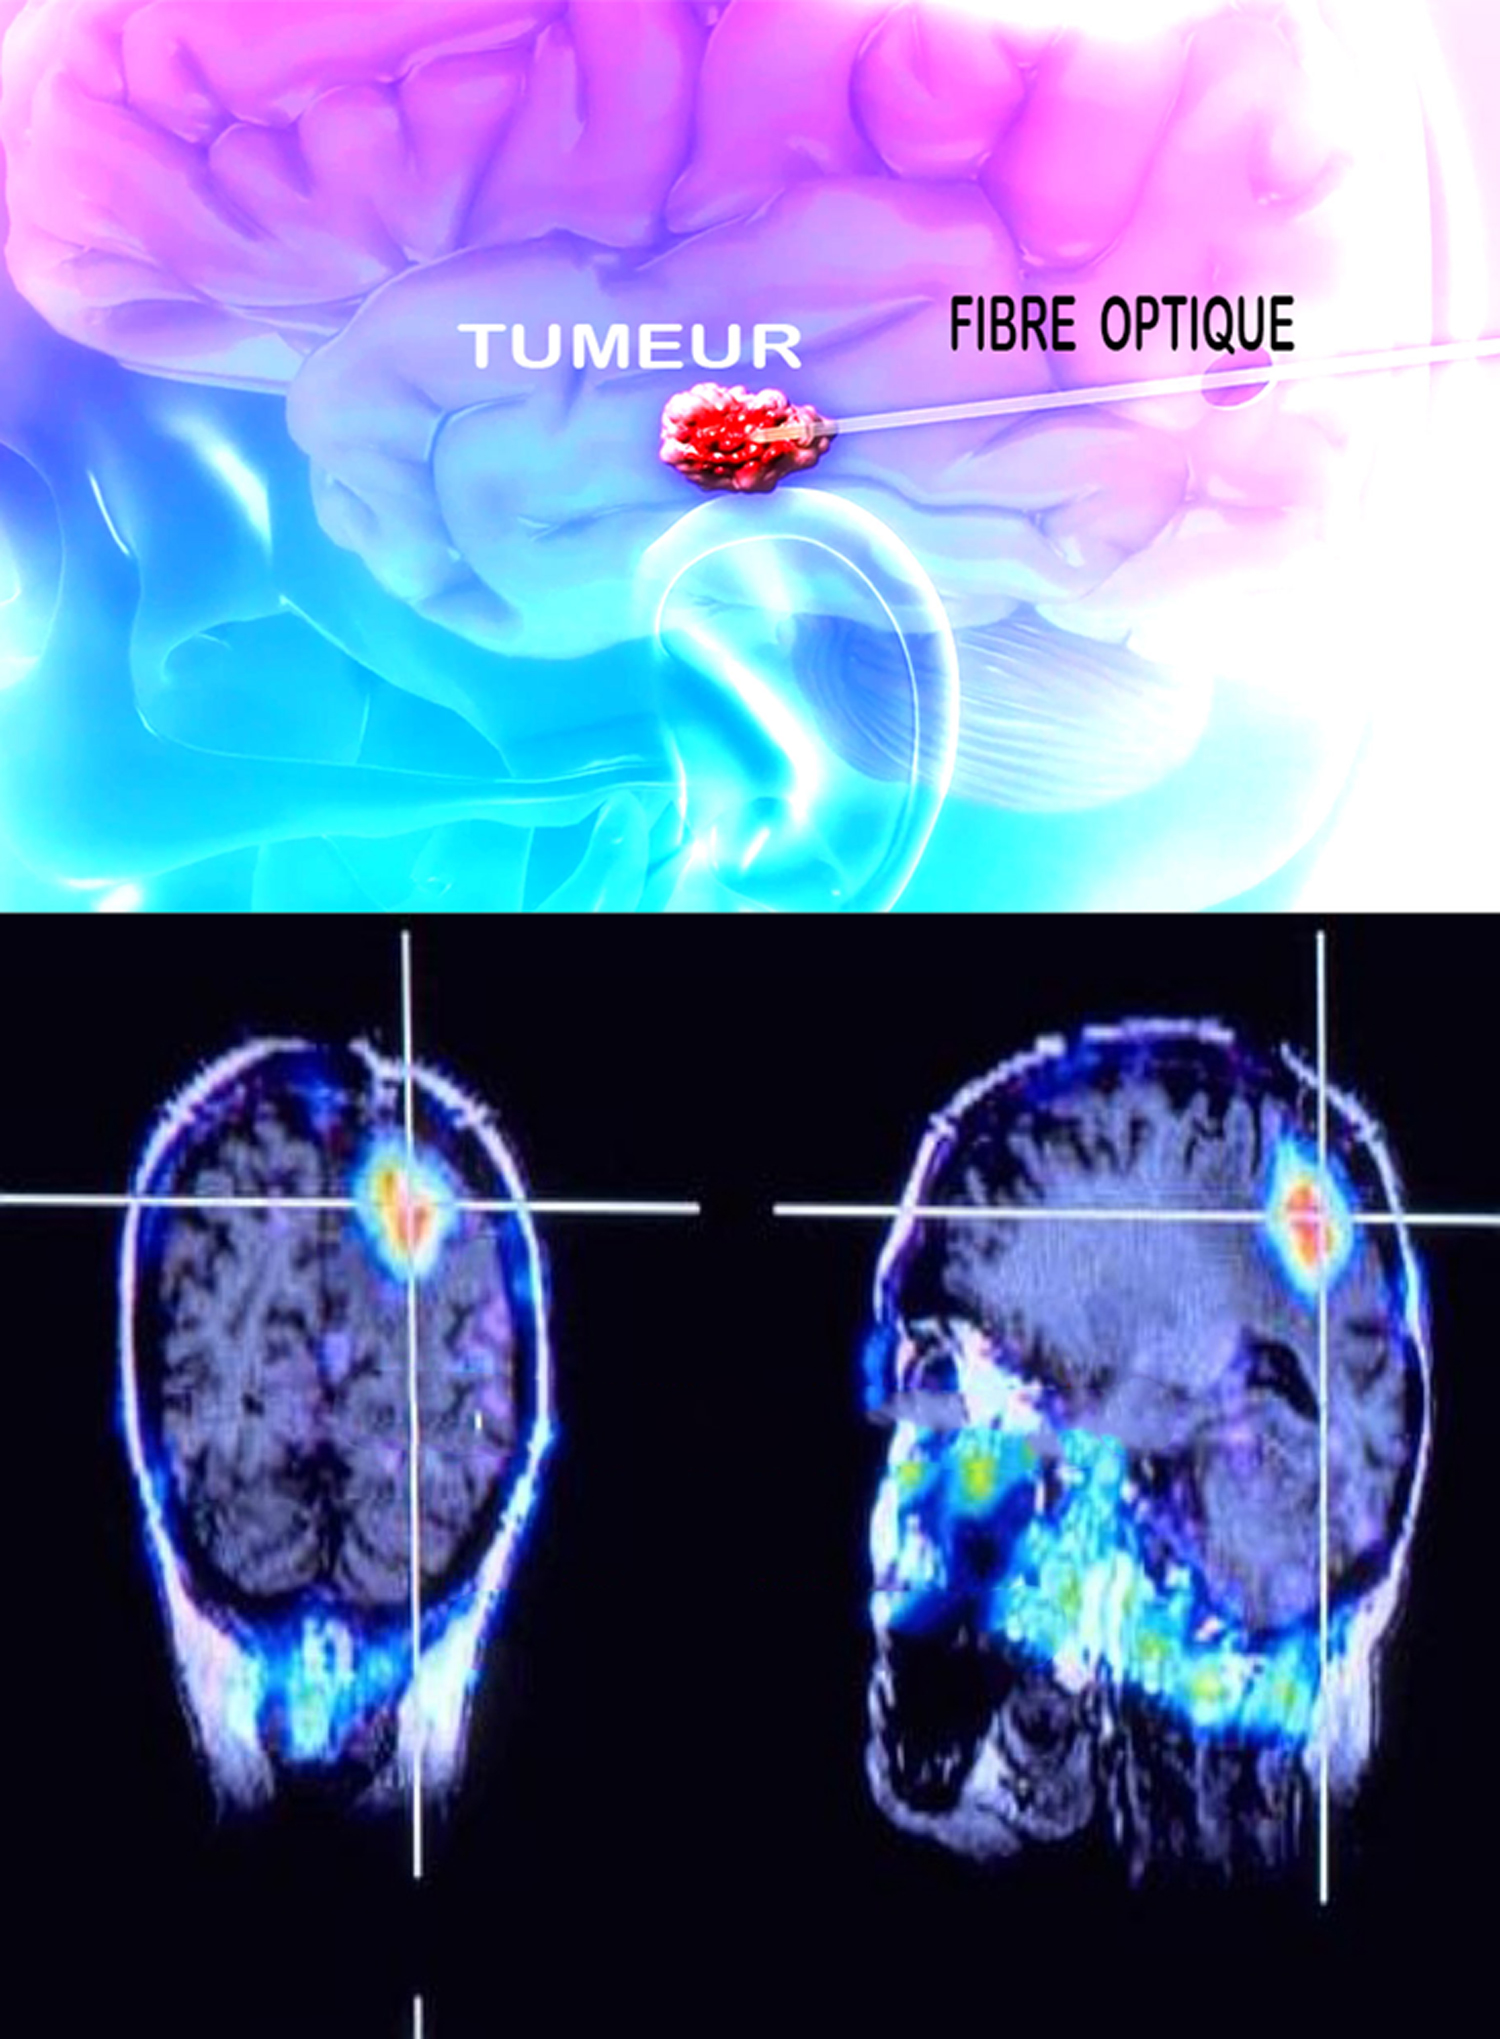 Traitement lasers dans les tumeurs cerebrales - formation lasers ...